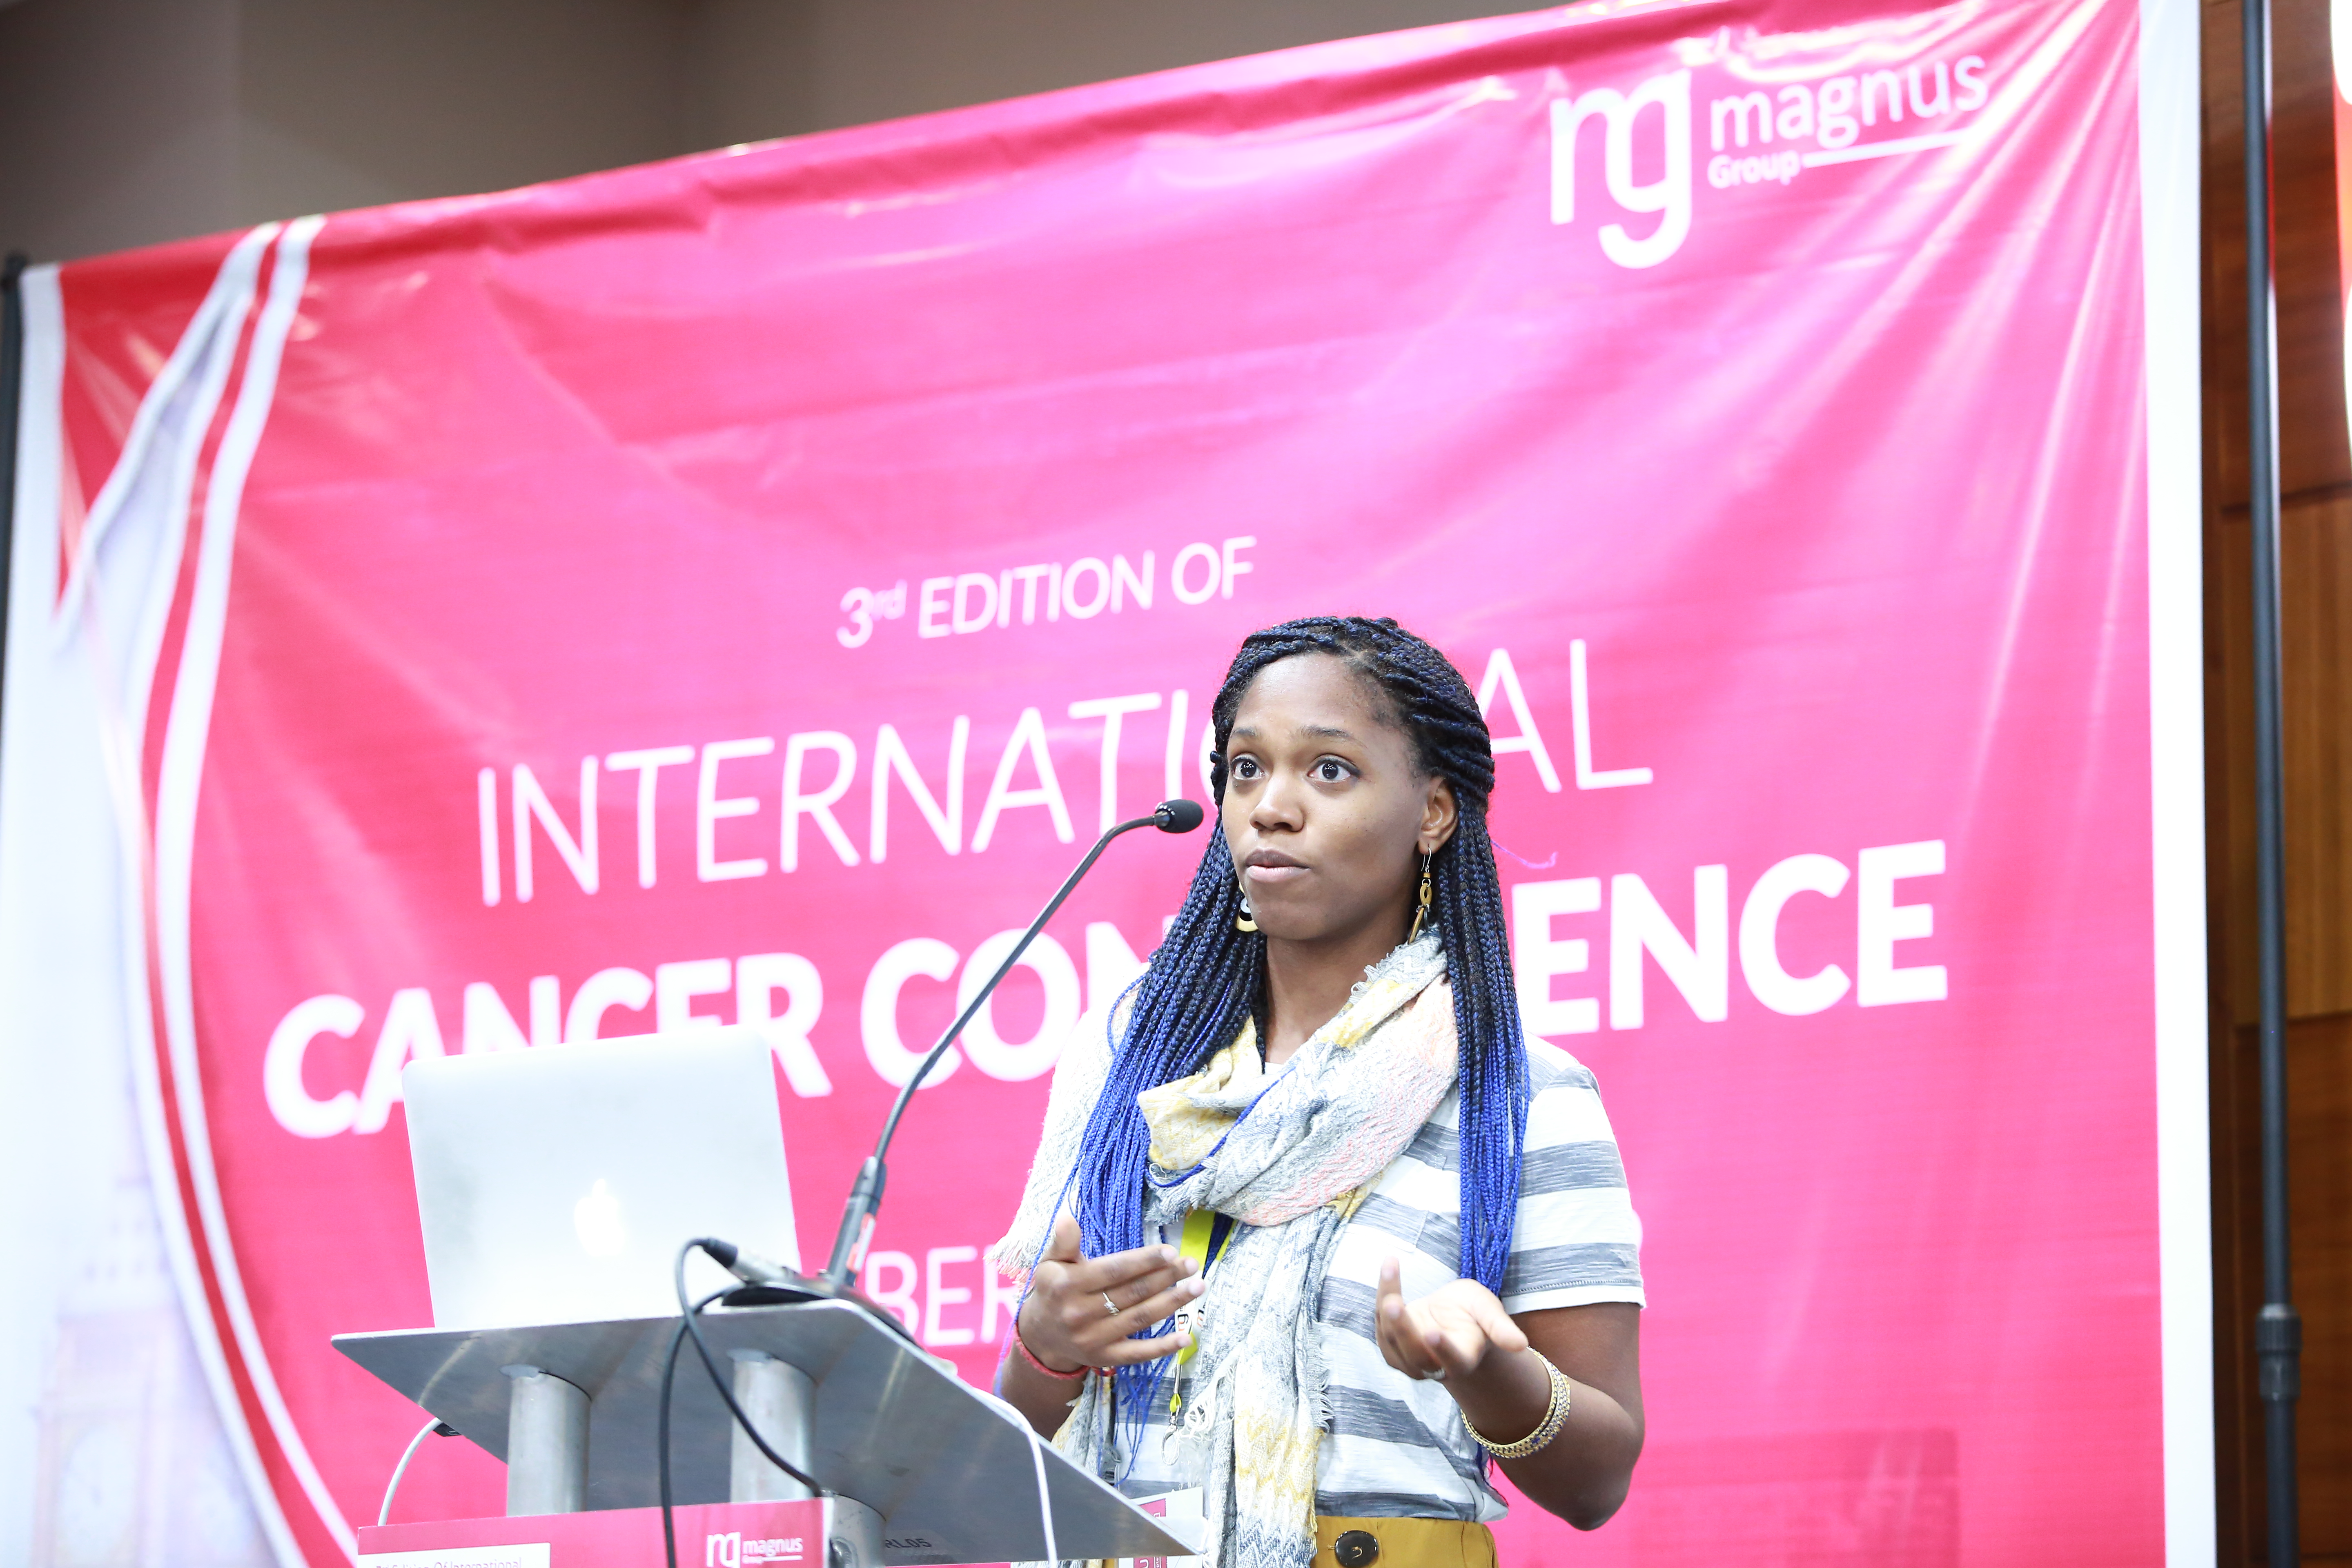 Speaker for Radiology Conferences - Keitly Mensah